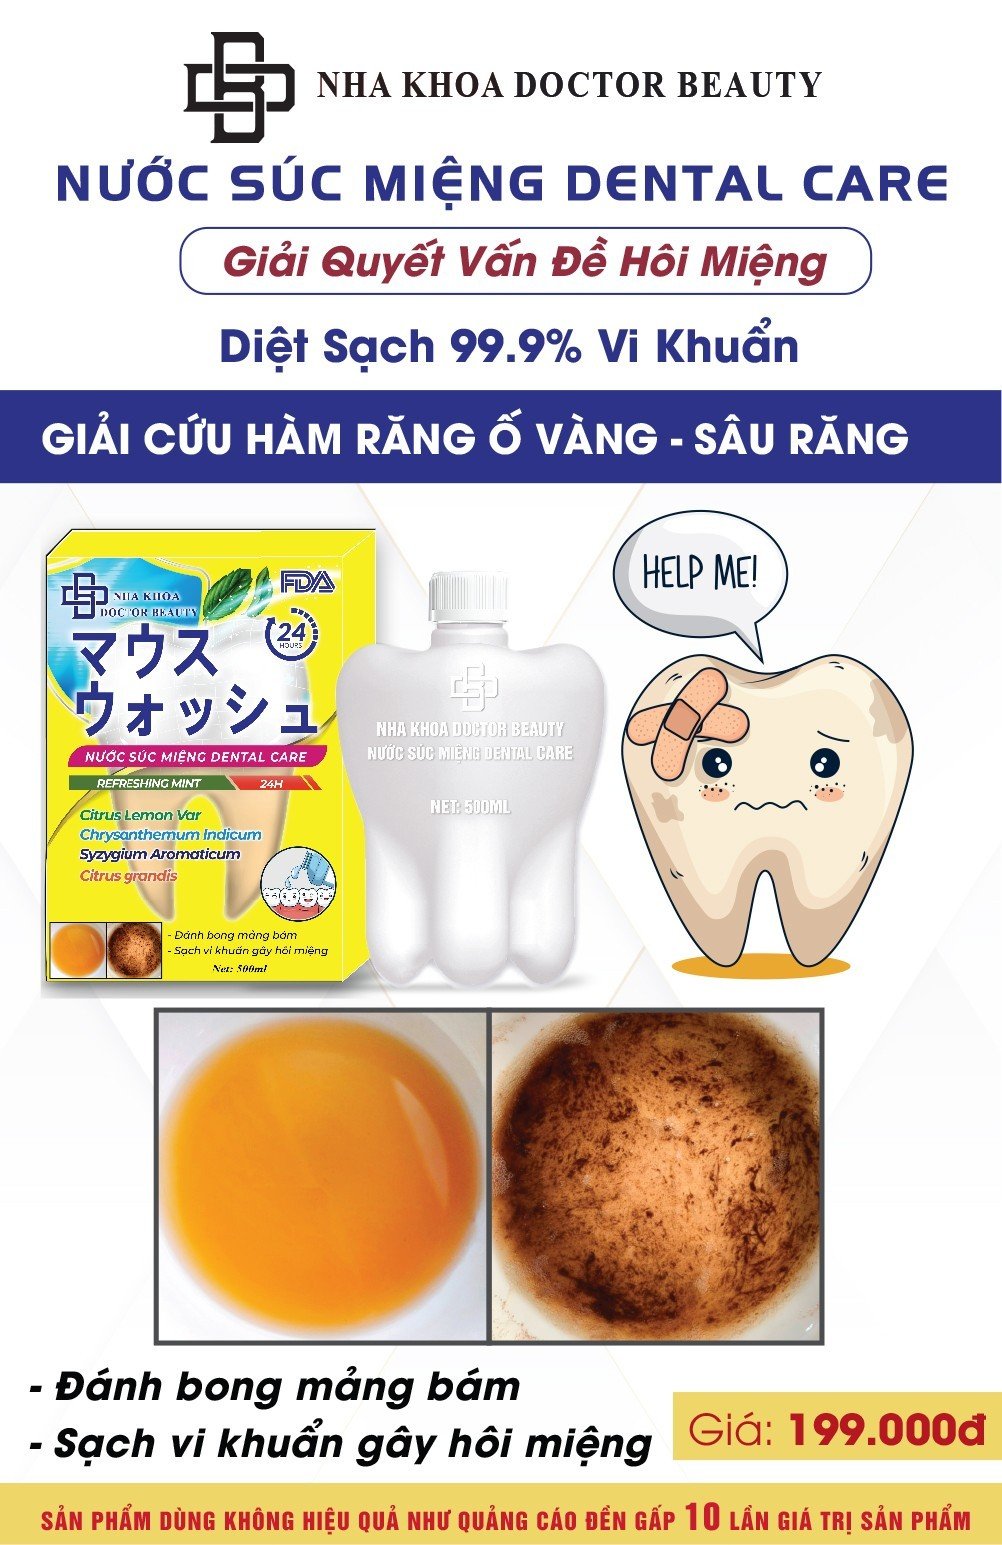 Nước súc miệng Dental Care 500ml,giúp bong mảng bám, giảm ố vàng